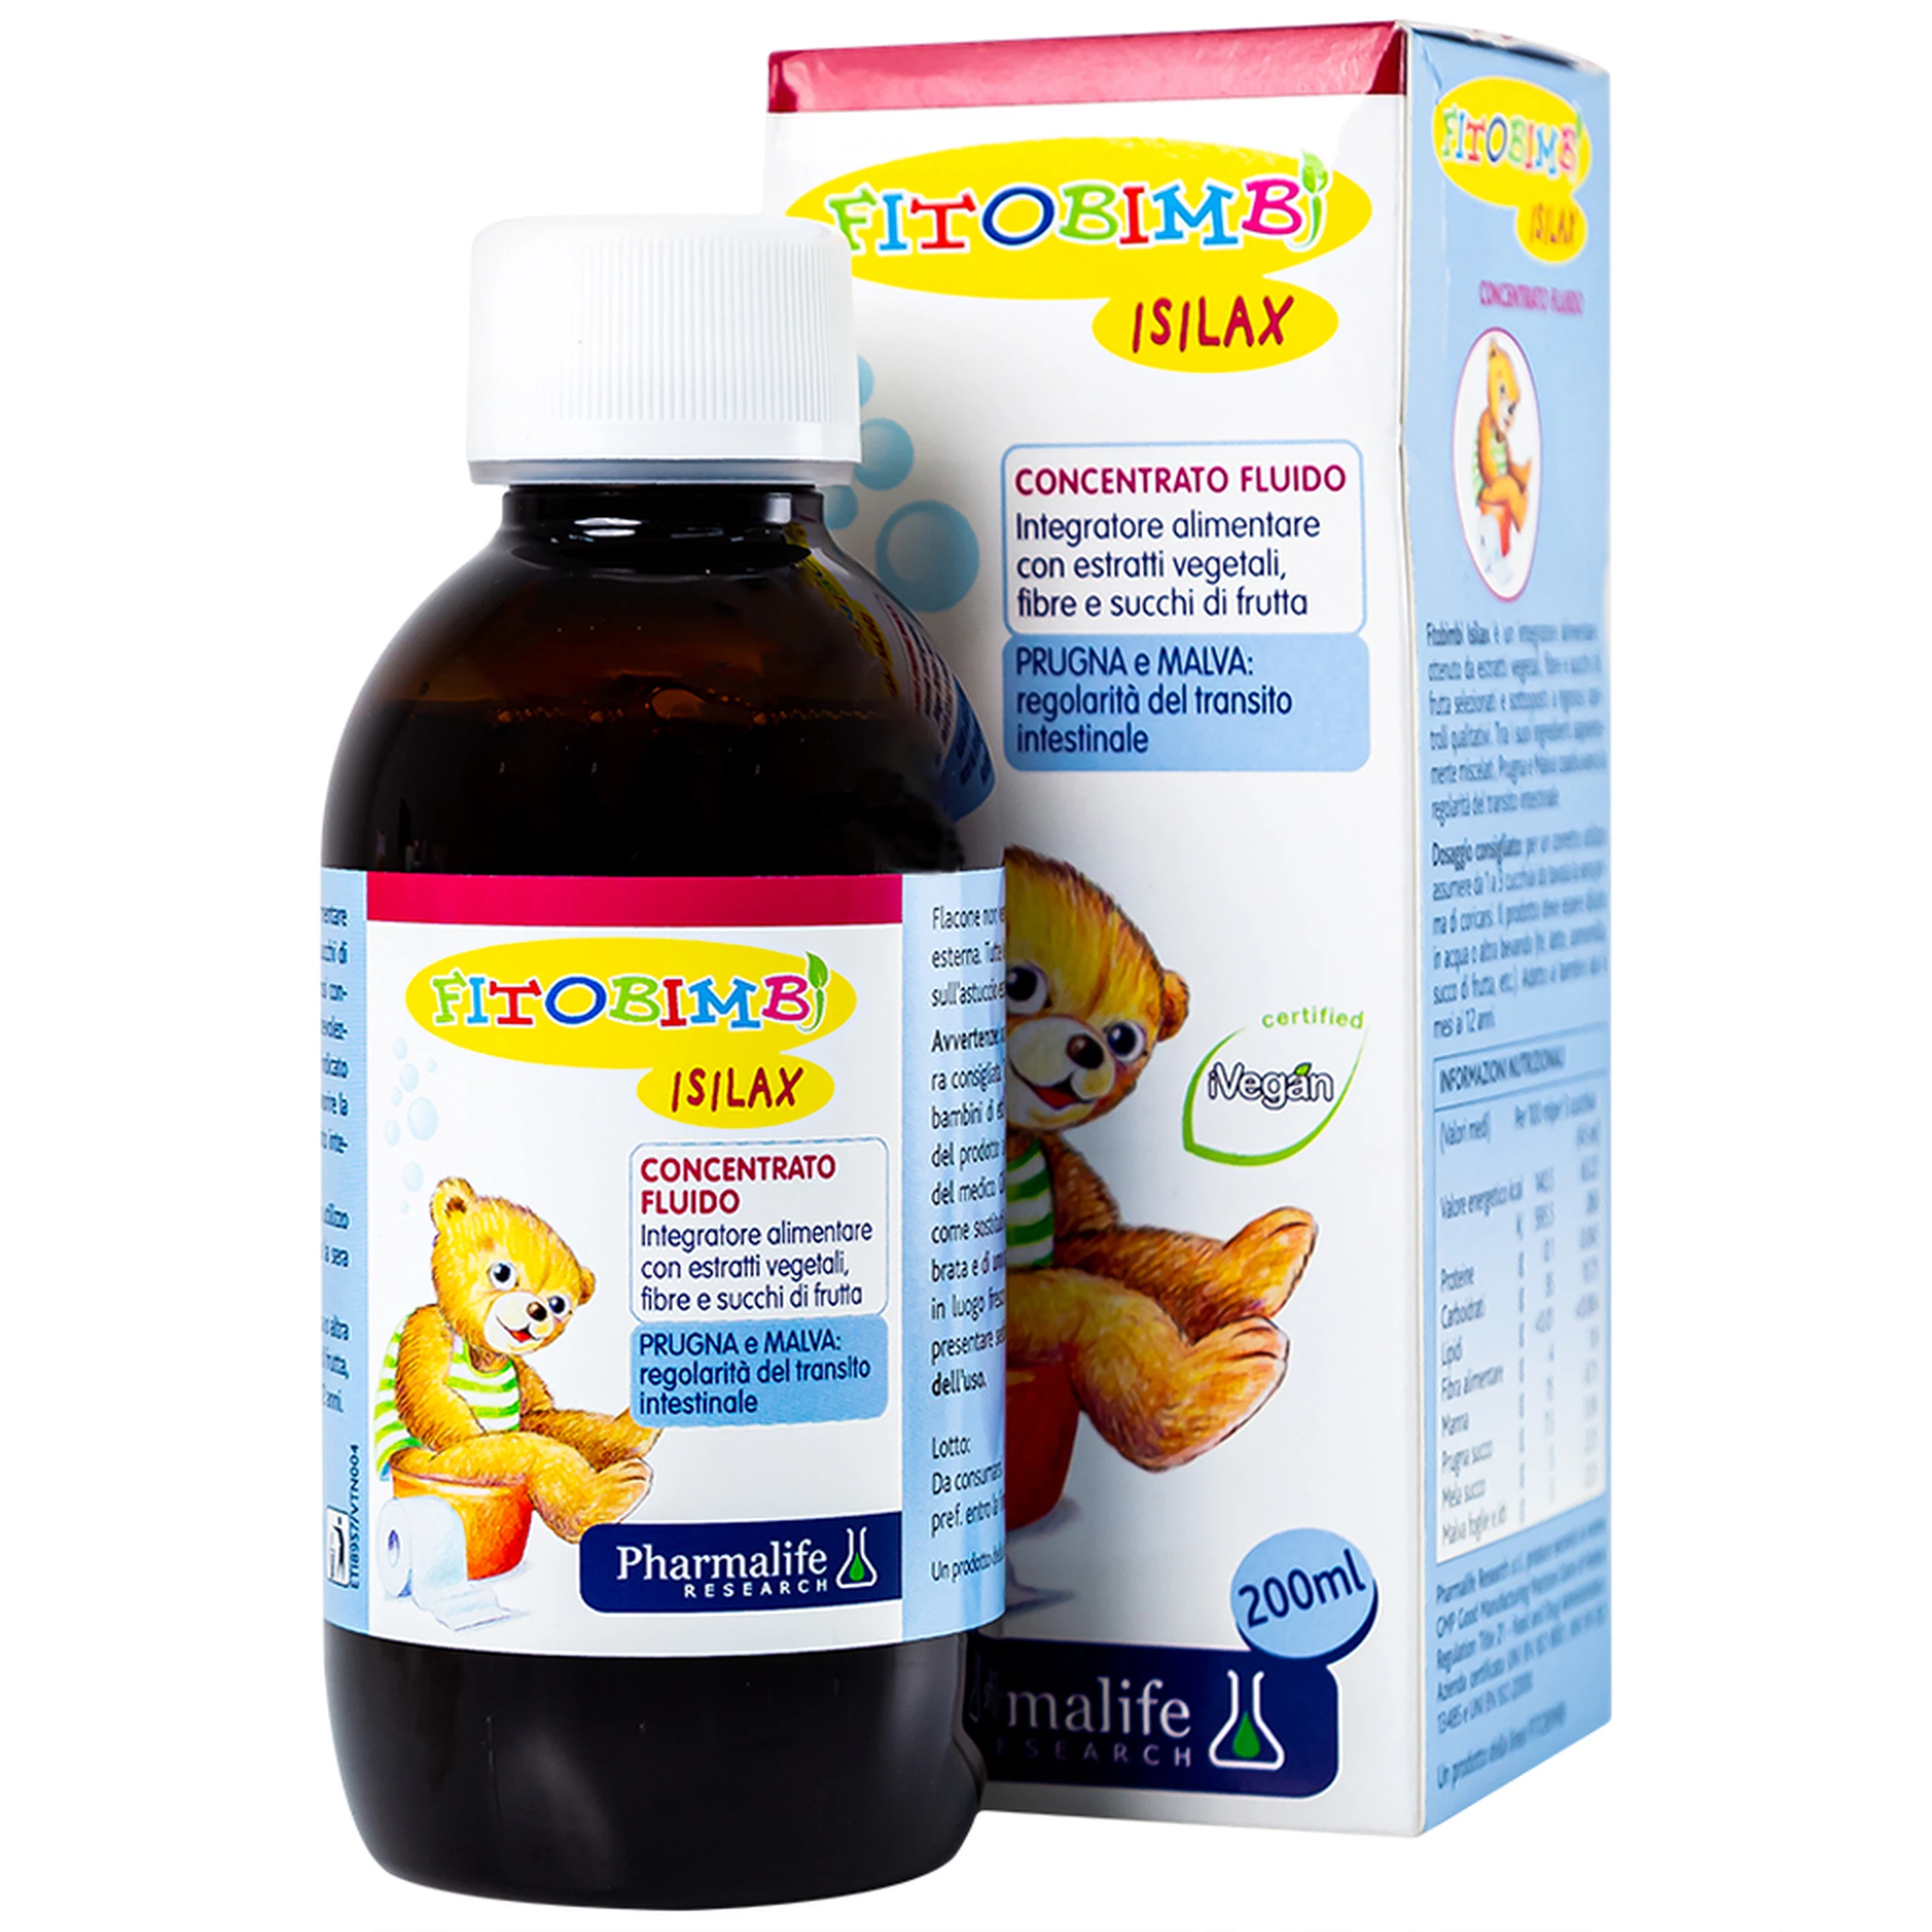 Siro Fitobimbi Isilax Concentrato Fluido Pharmalife nhuận tràng, hỗ trợ giảm táo bón cho trẻ (200ml)